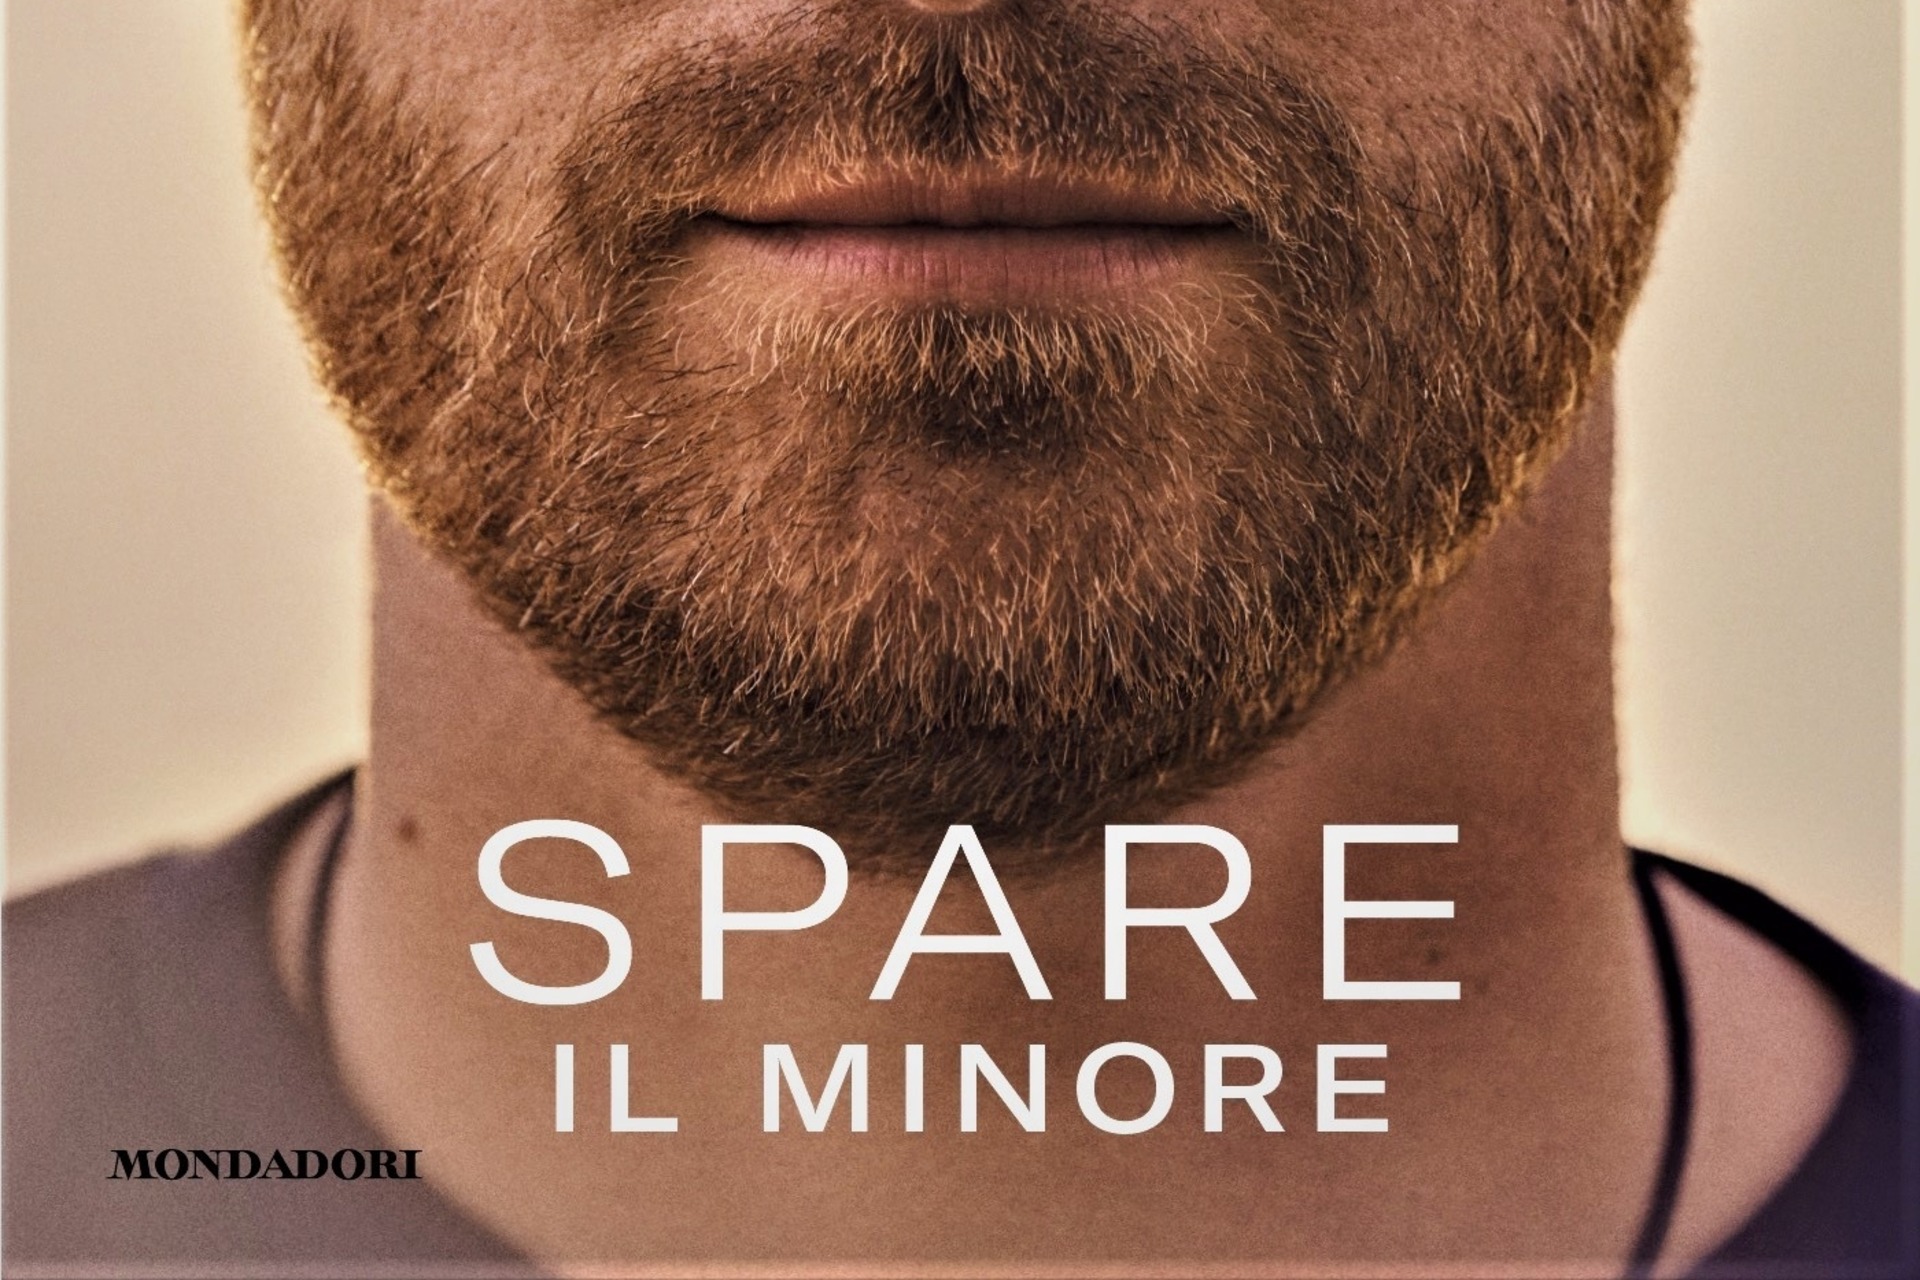 Ανταλλακτικά: το κάτω μέρος του εξωφύλλου του αυτοβιογραφικού βιβλίου του πρίγκιπα Χάρι, δούκα του Σάσεξ, στην ιταλική έκδοση που δημοσίευσε η Mondadori με τον τίτλο "Spare, il minor"